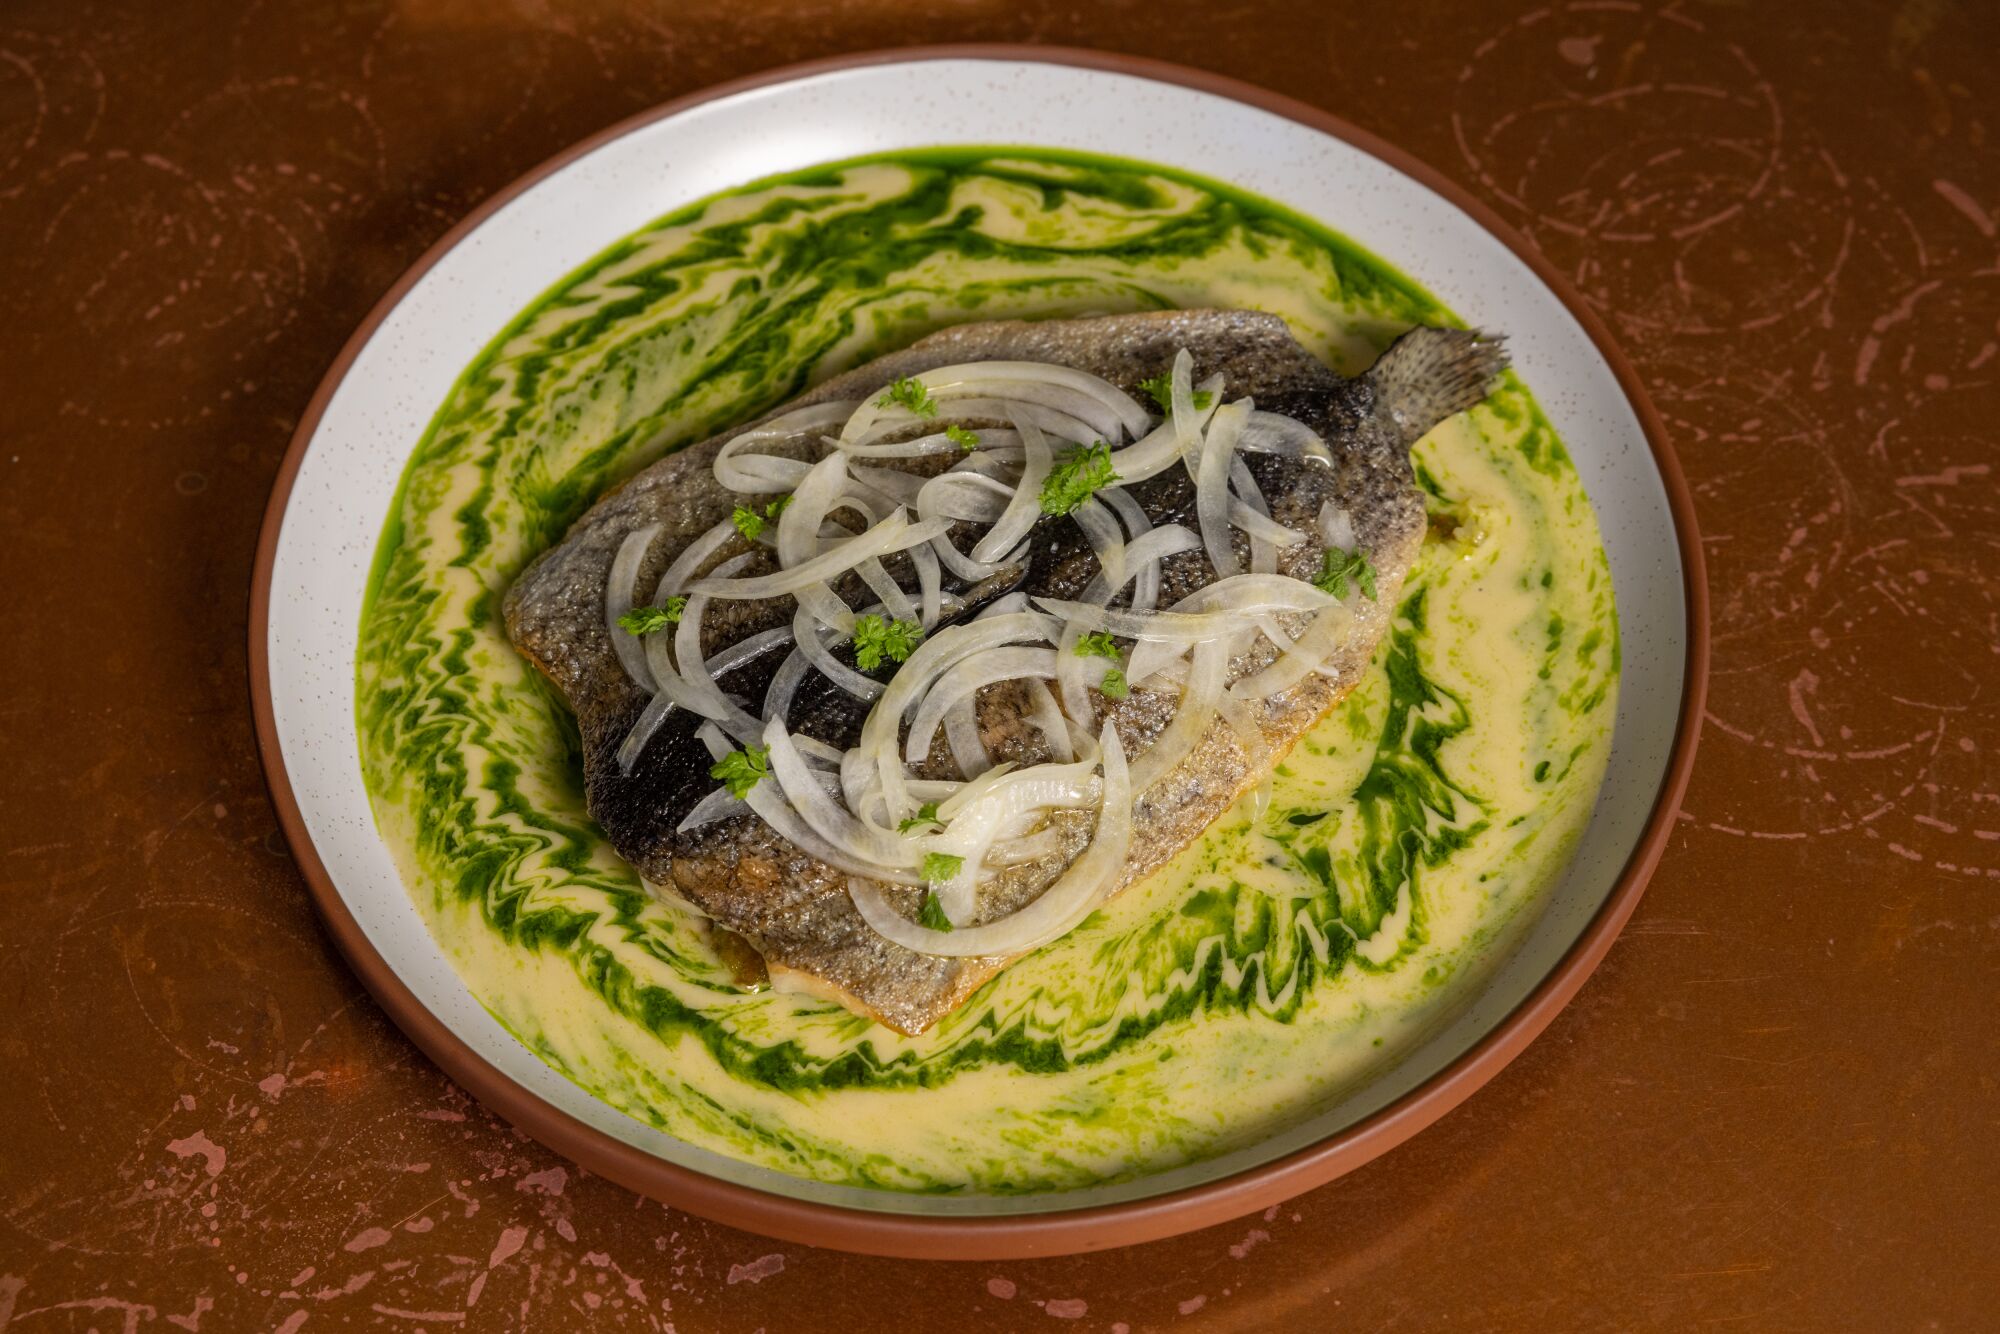 Ein Teller mit Forellen, garniert mit Zwiebeln und in einer gelb-grünen Soße